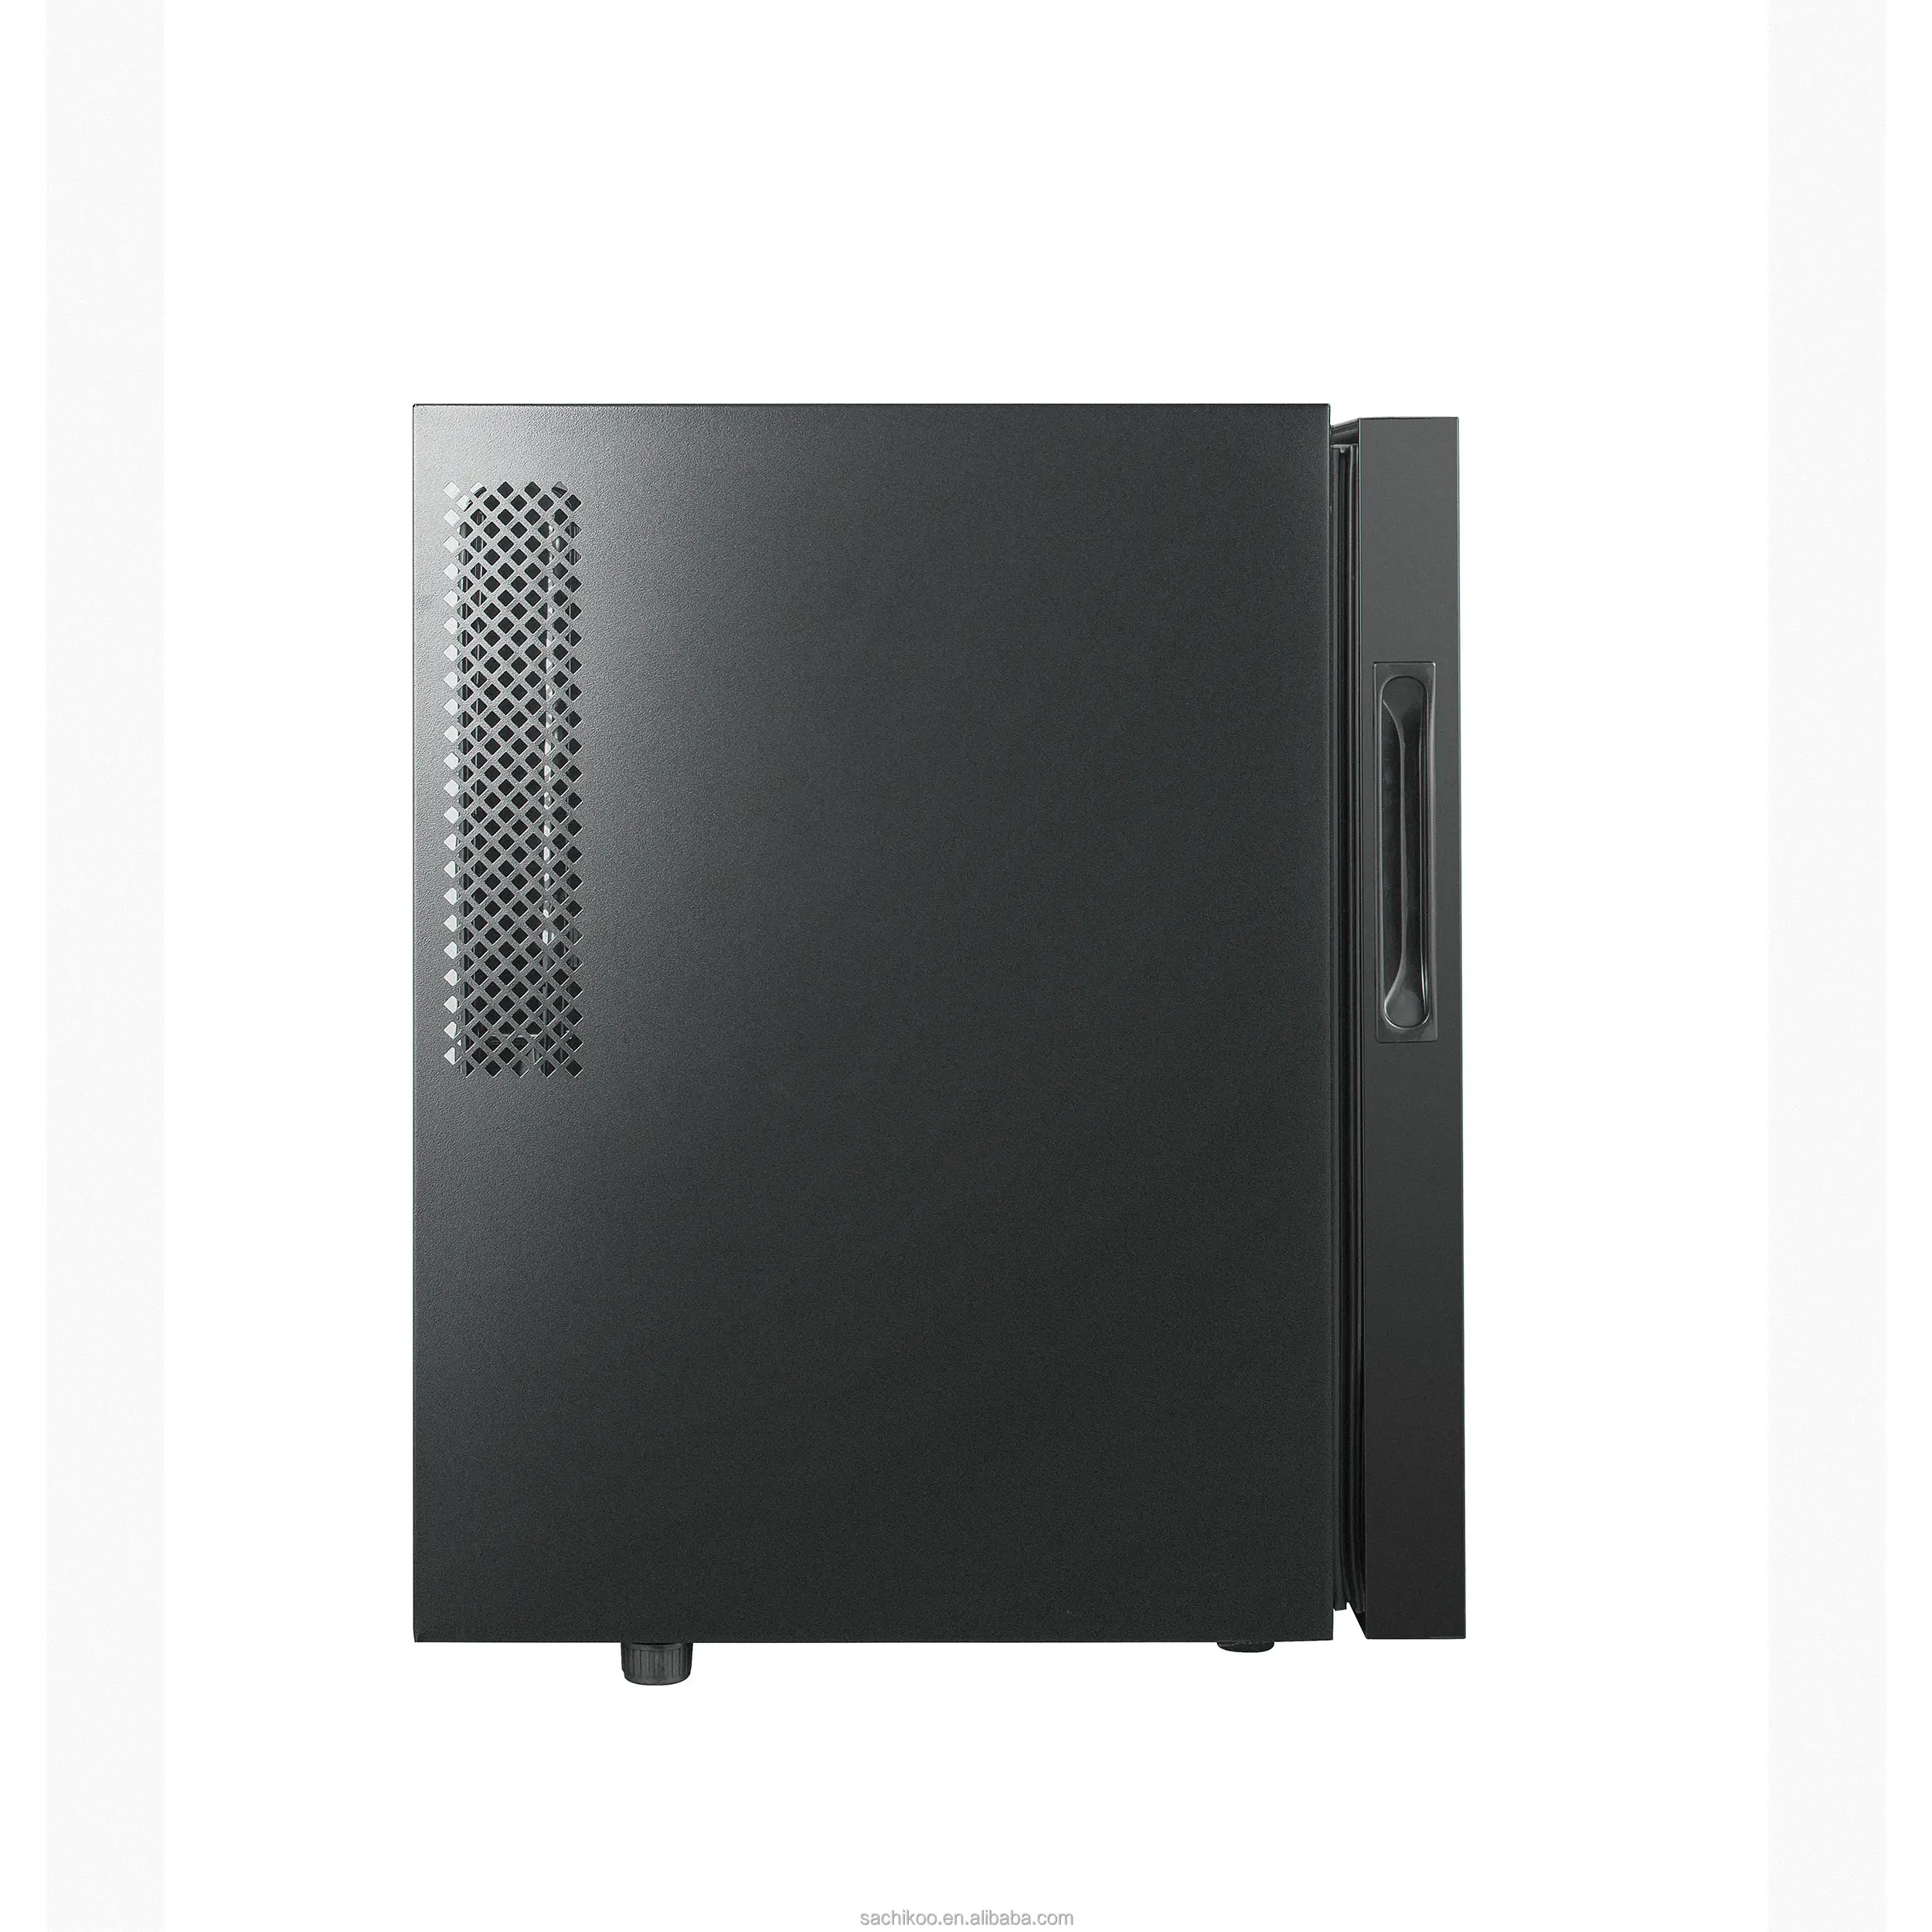 Tủ lạnh mini sachikoo 30L Fluorocarbon, nhiệt độ không đổi và tiết kiệm năng lượng, tủ lạnh nhỏ cho khách sạn và quán bar